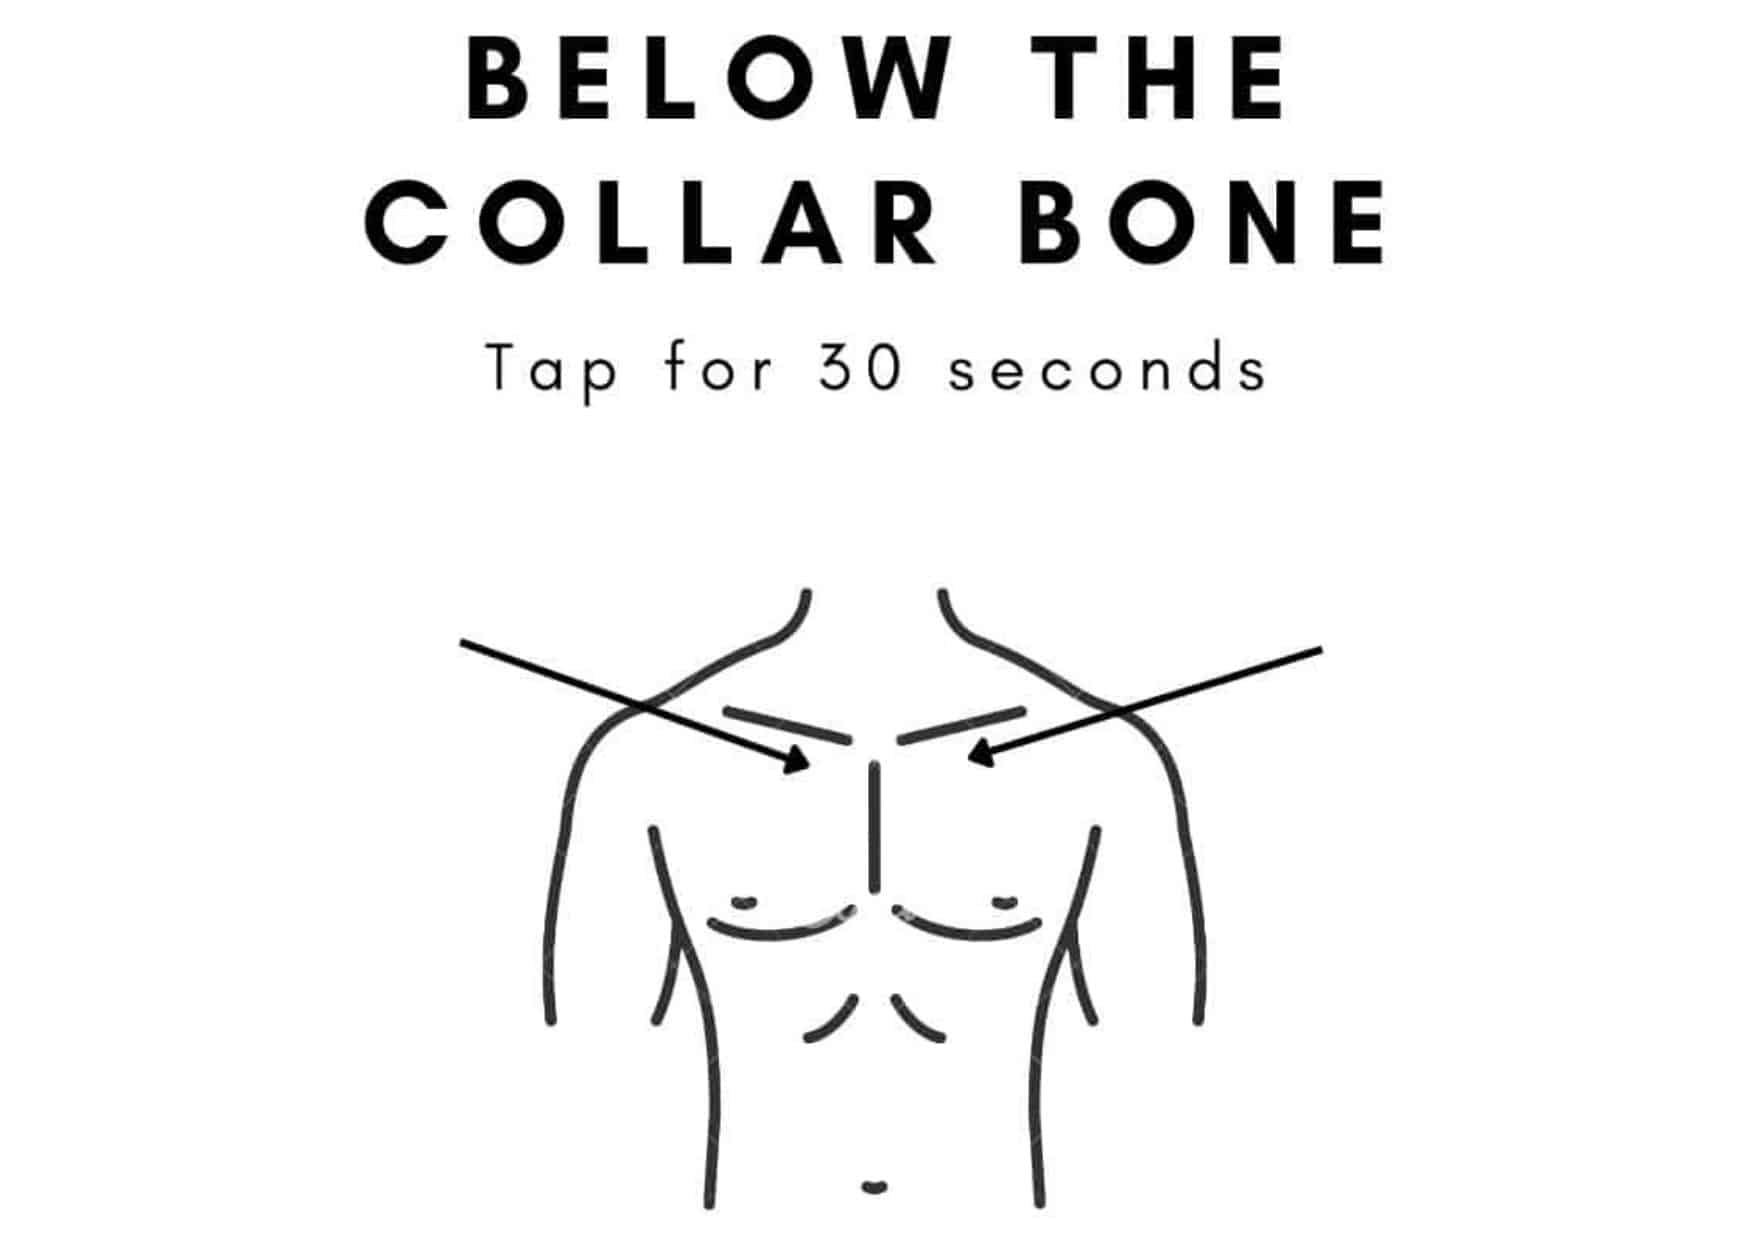 tapping below the collar bone